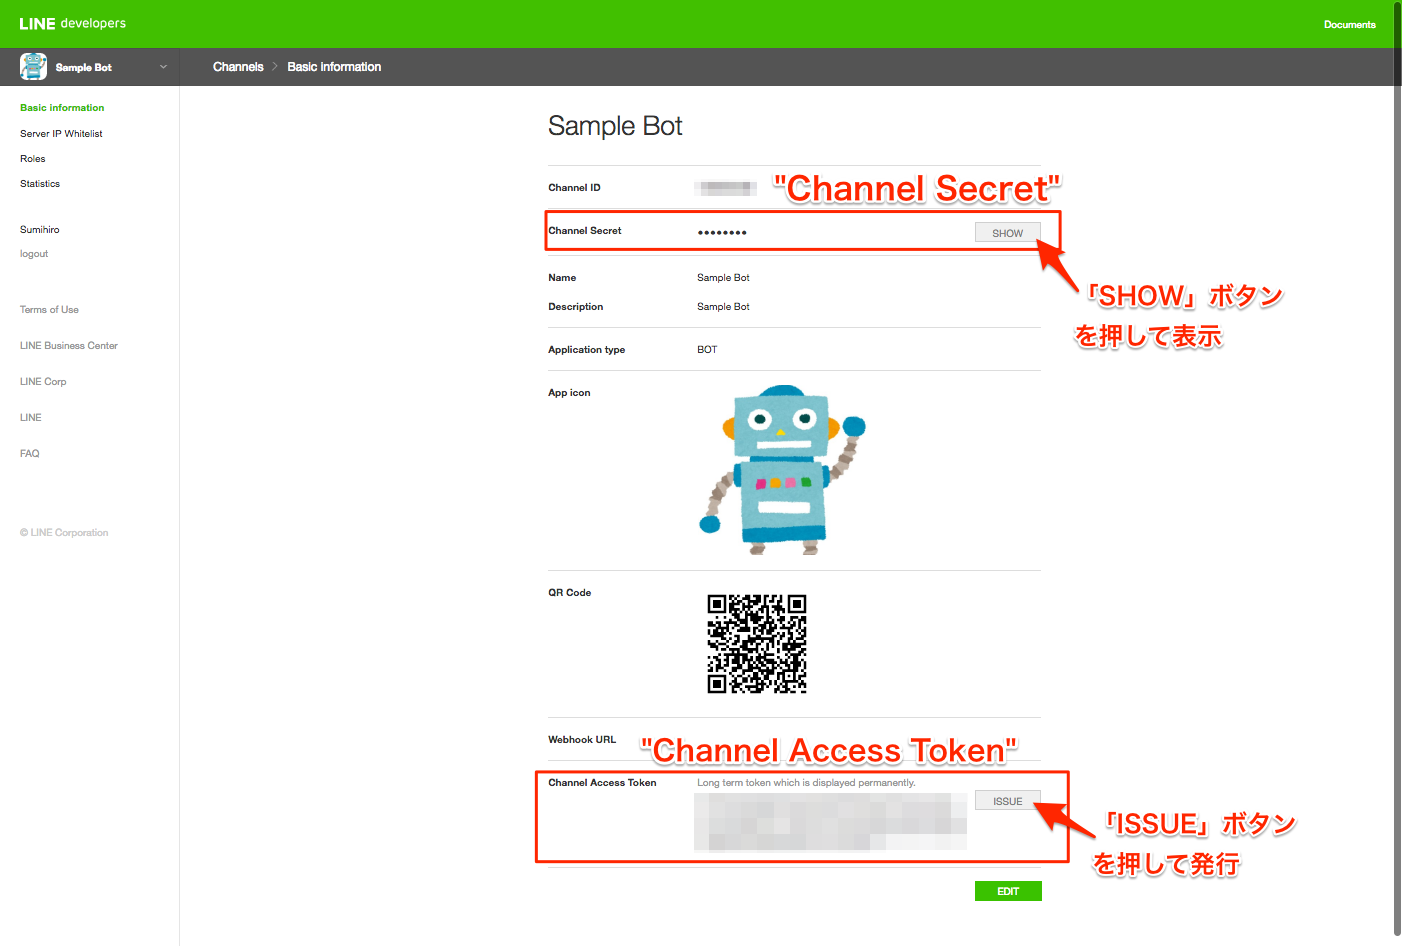 Channel SecretとChannel Access Tokenを取得